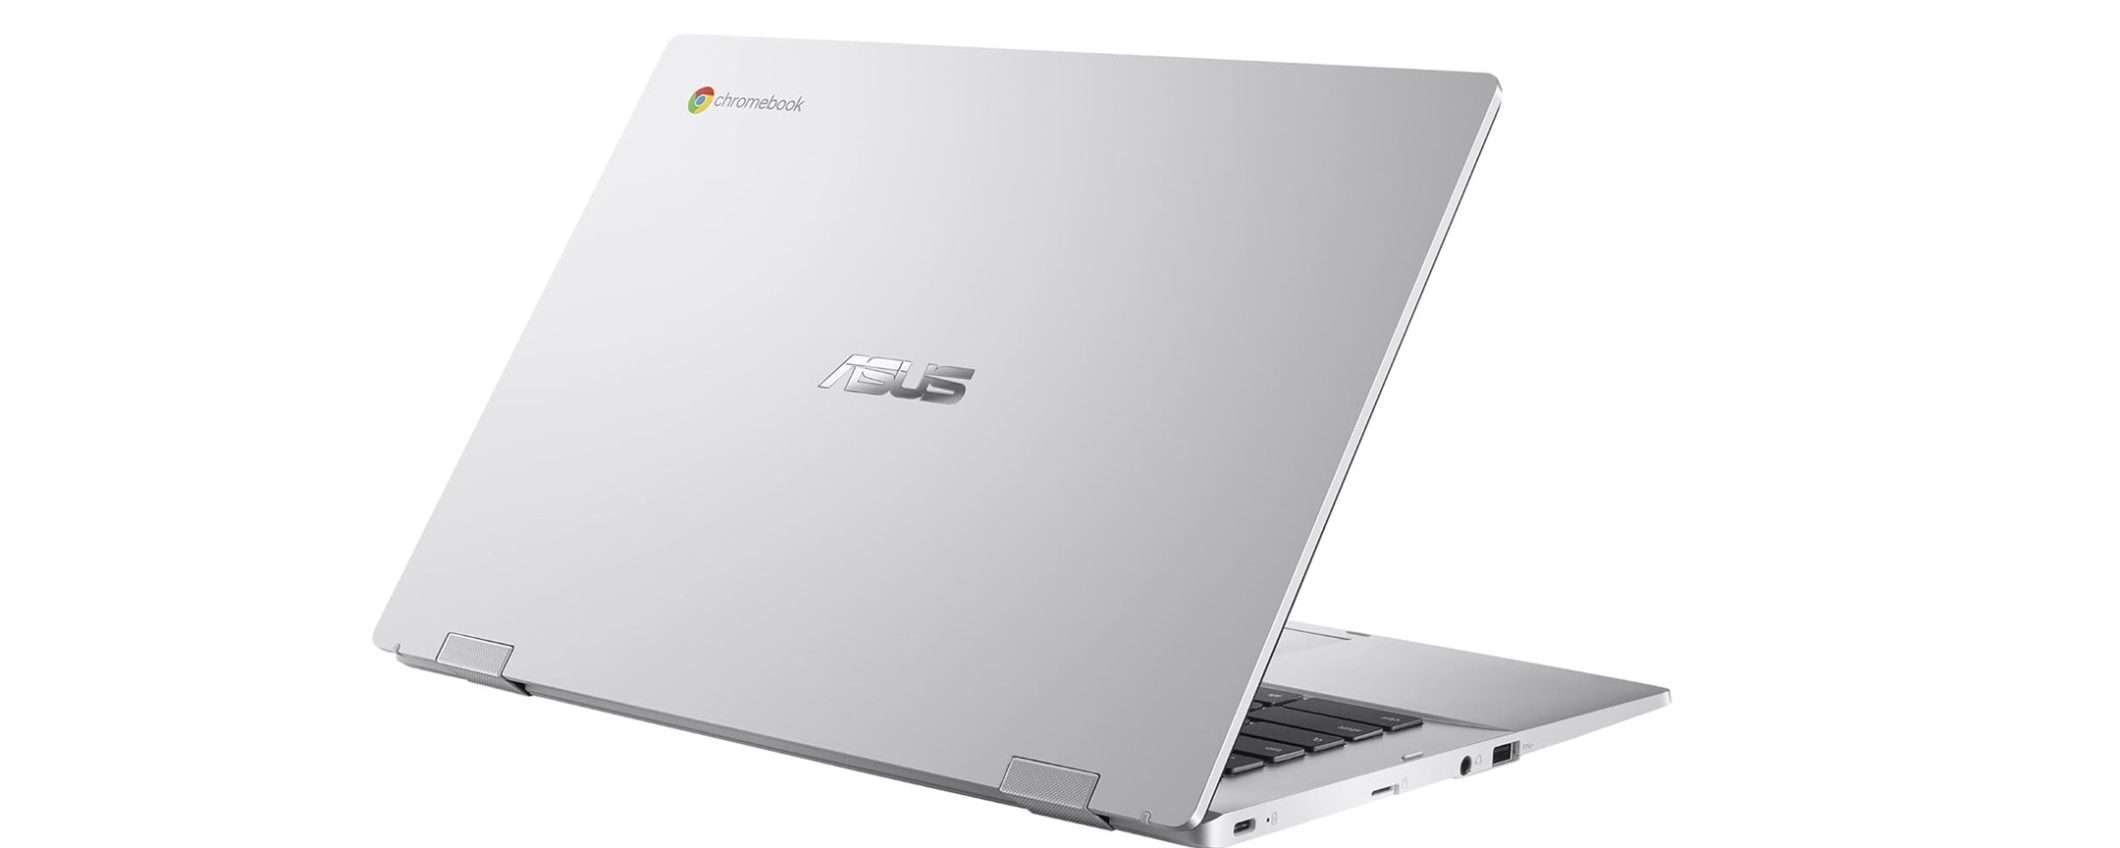 Questo Chromebook di ASUS costa meno di 200€ su Amazon: è un AFFARE